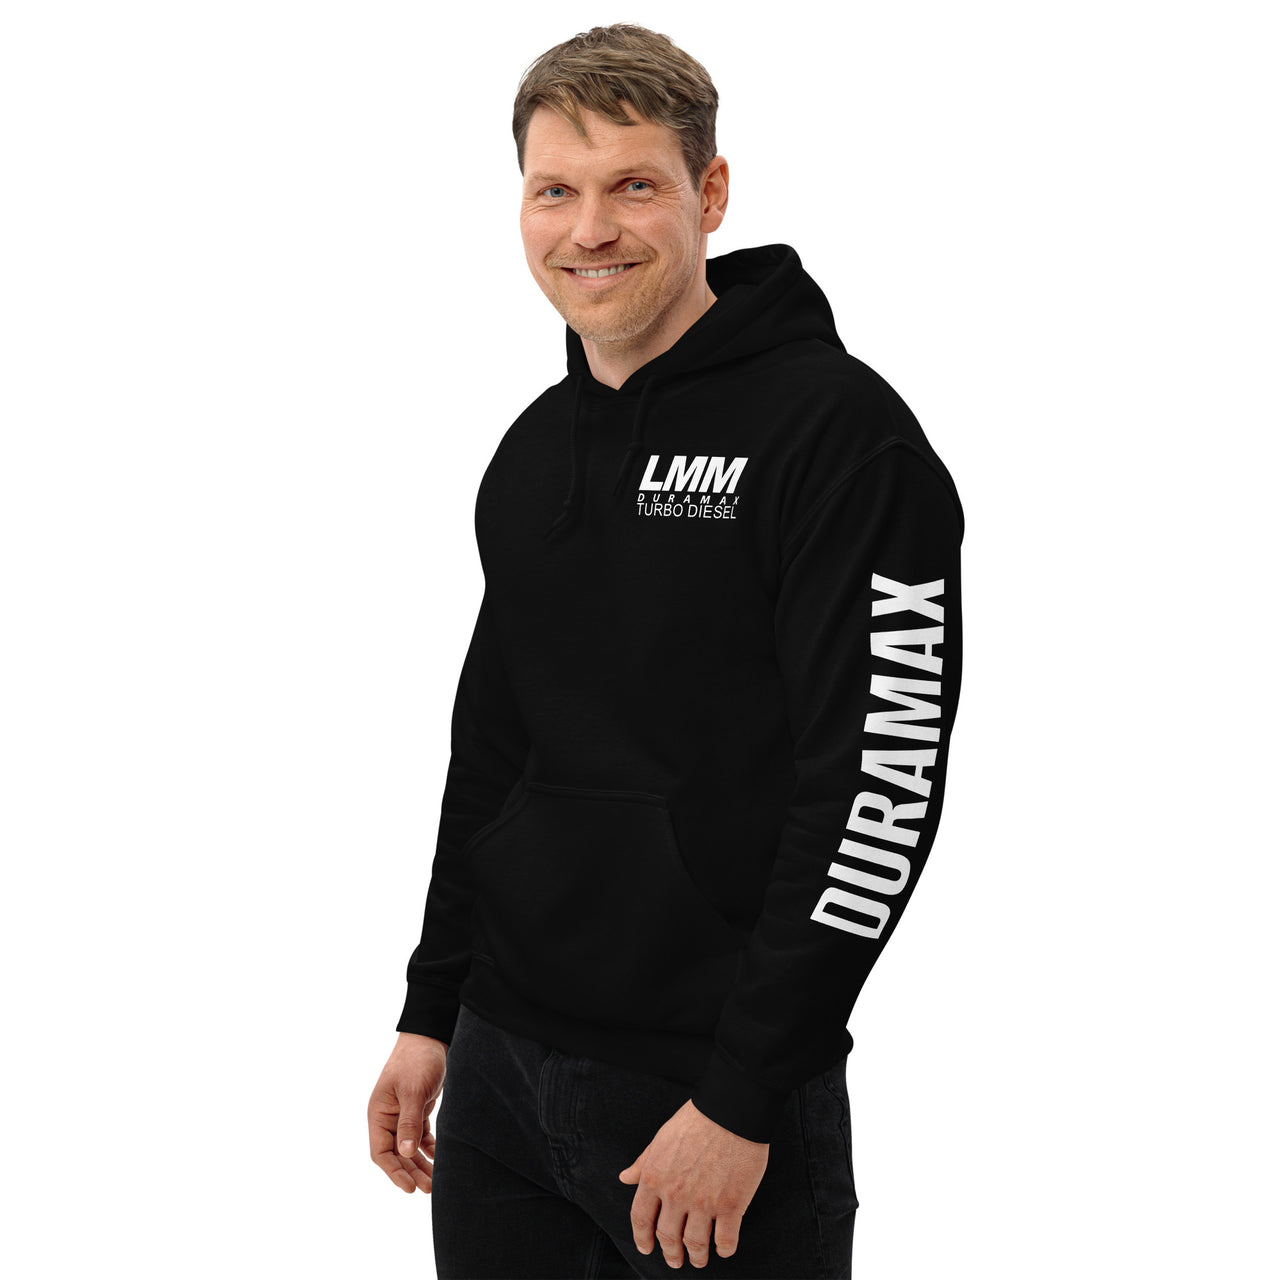 LMM Duramax Hoodie Pullover Sweatshirt With Sleeve Print modeled in black